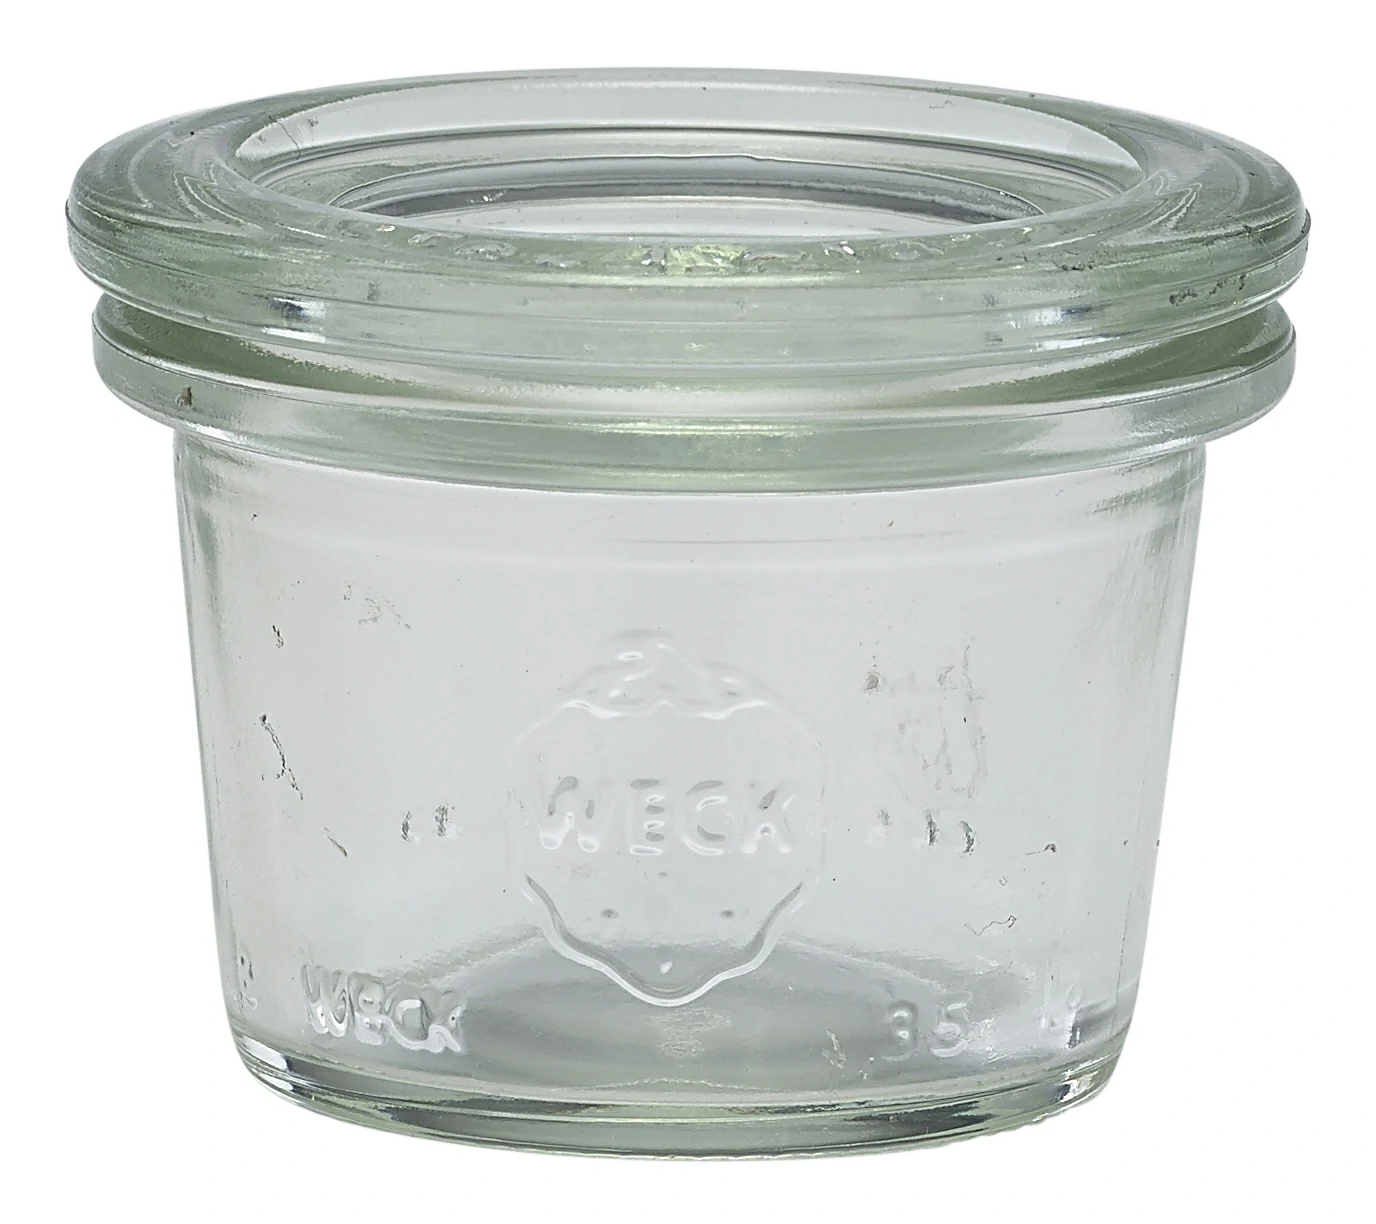 WECK Mini Jar 3.5cl/1.25oz